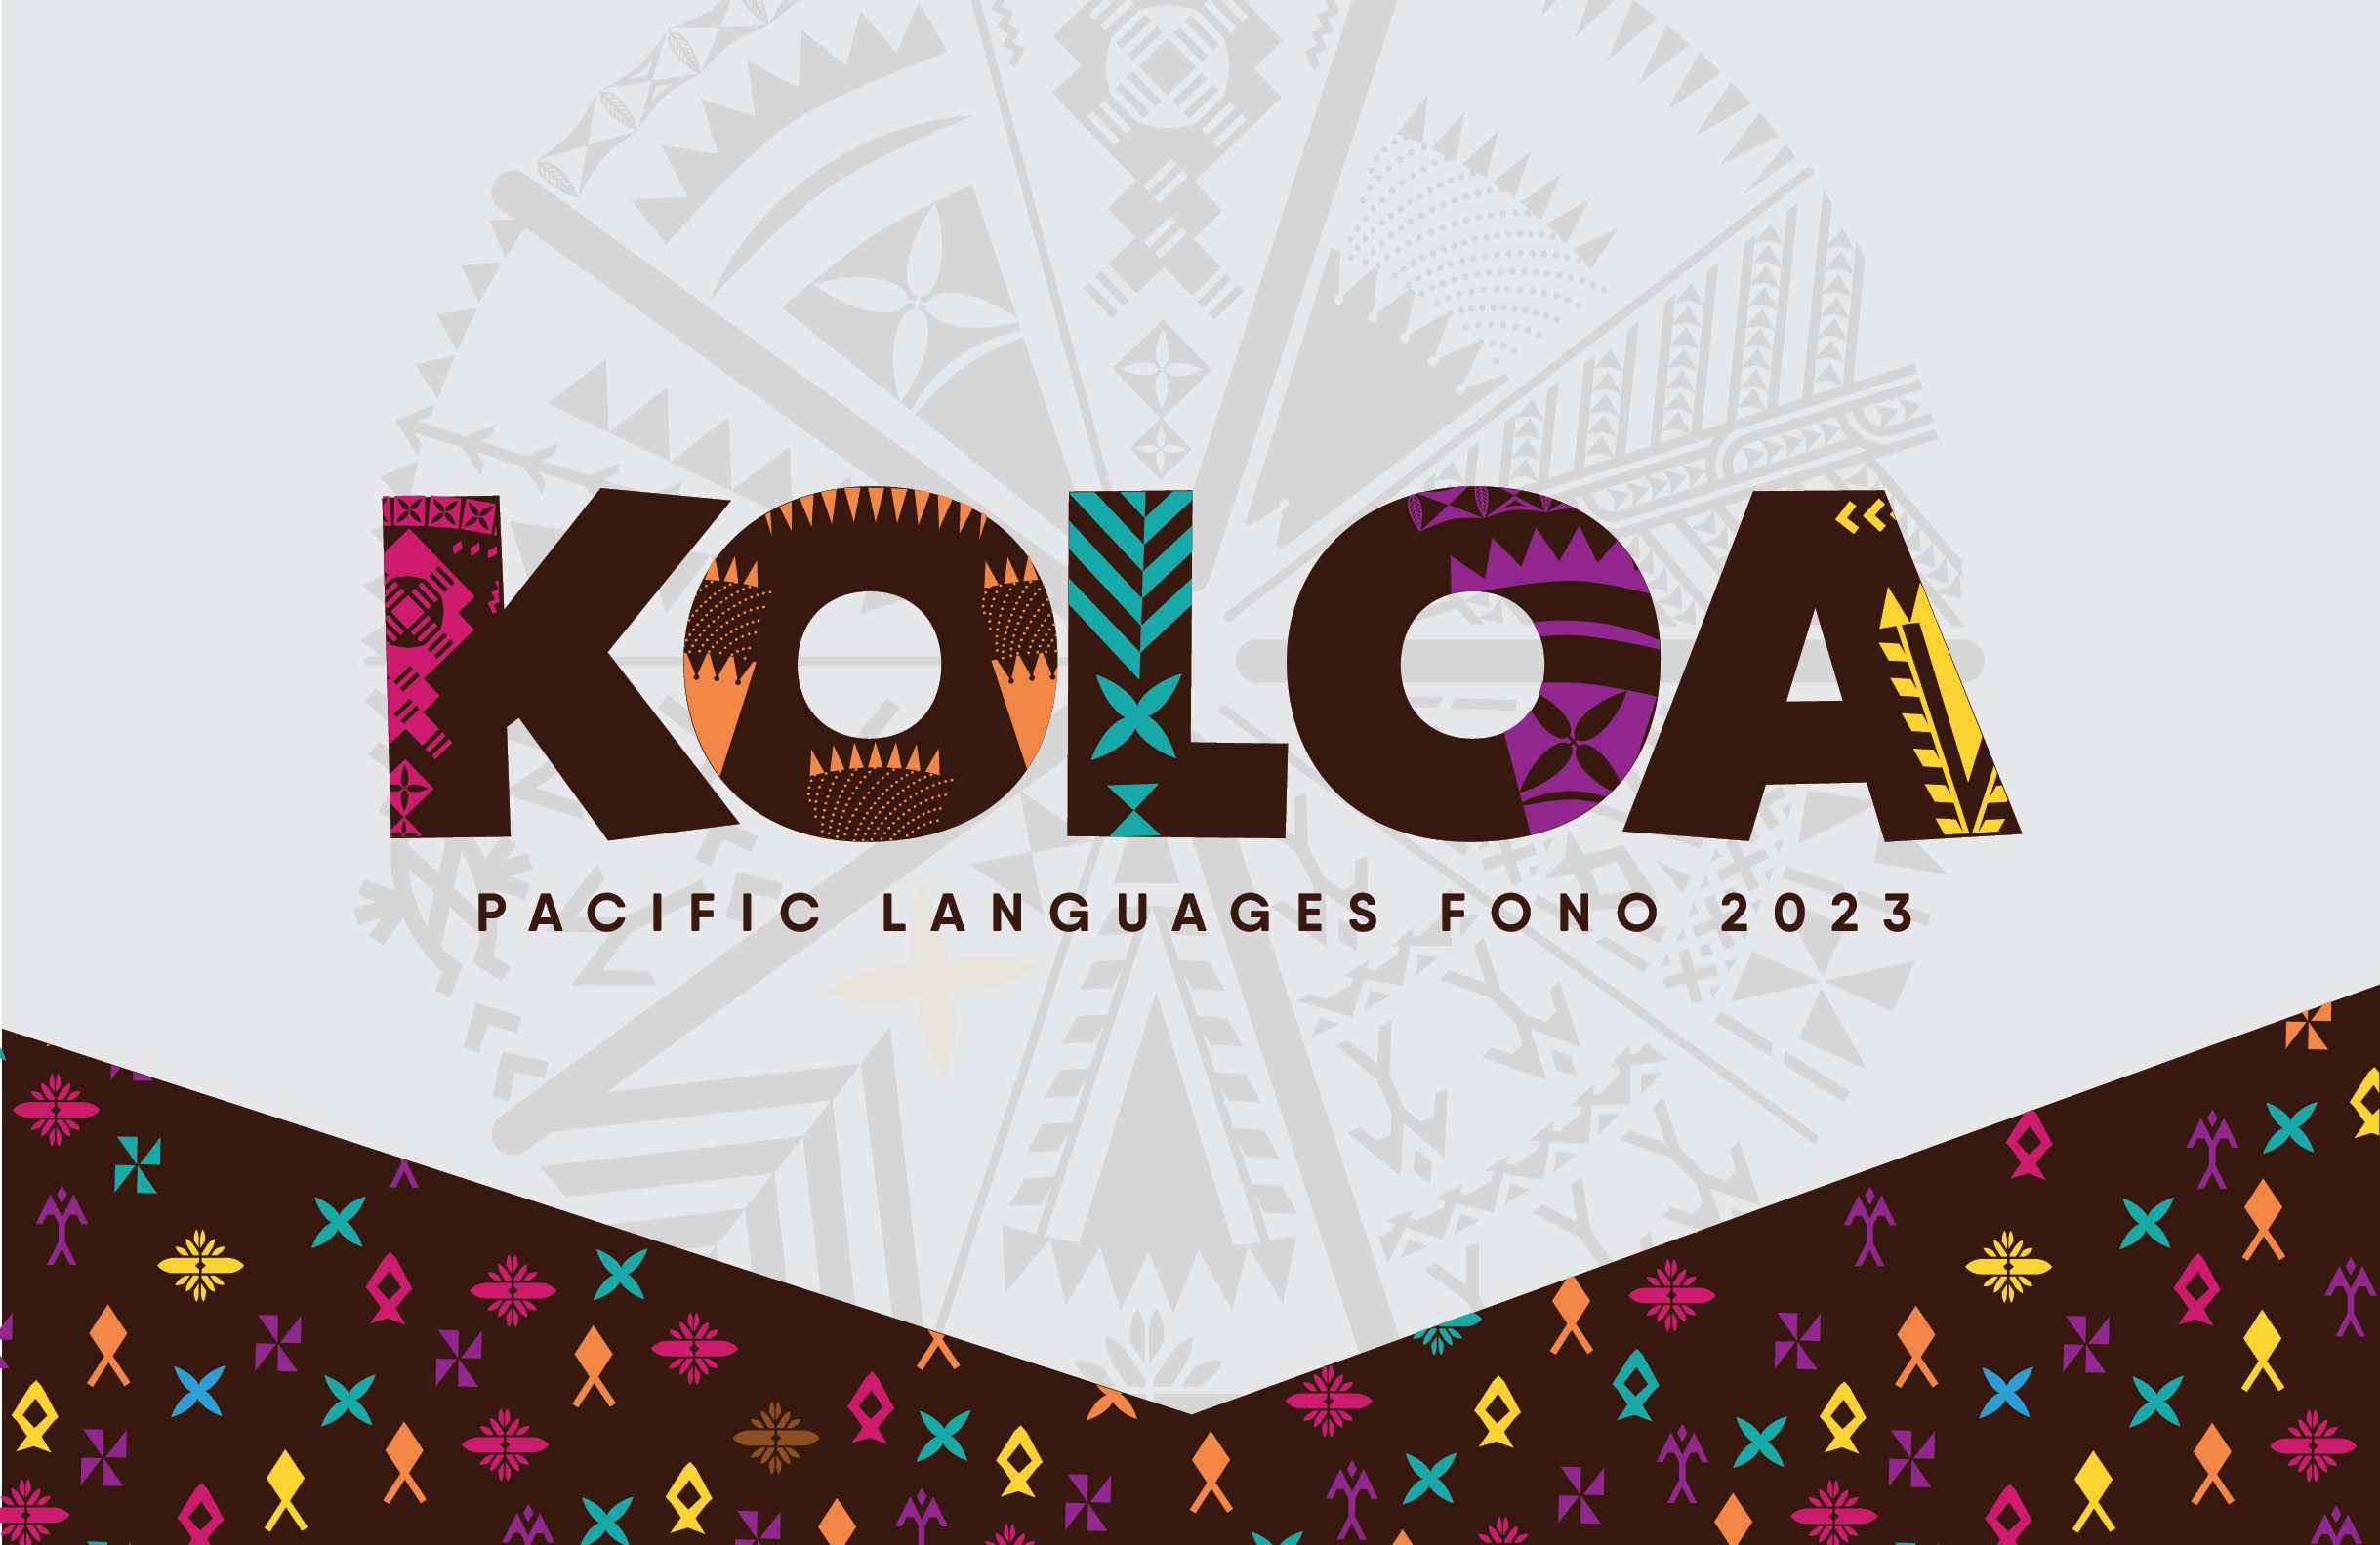 Koloa web banner